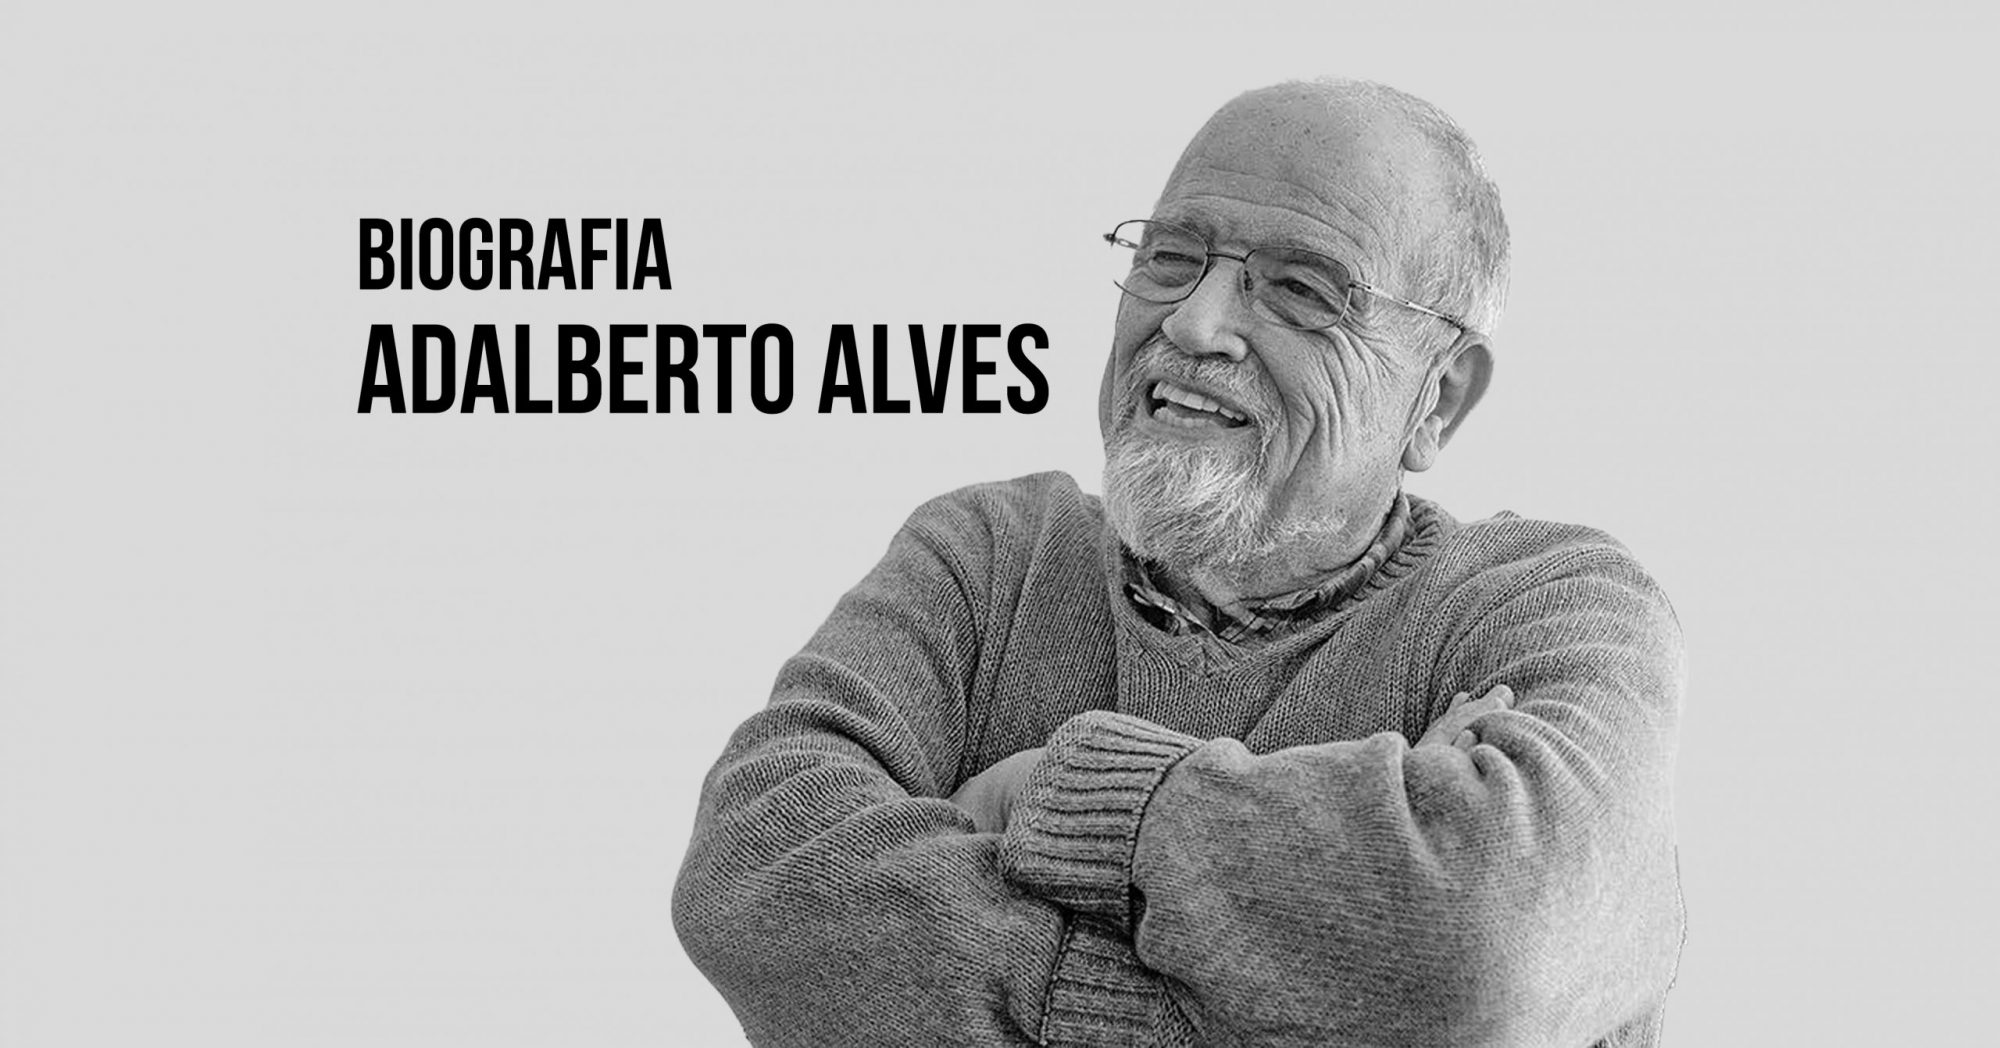 Adalberto Alves